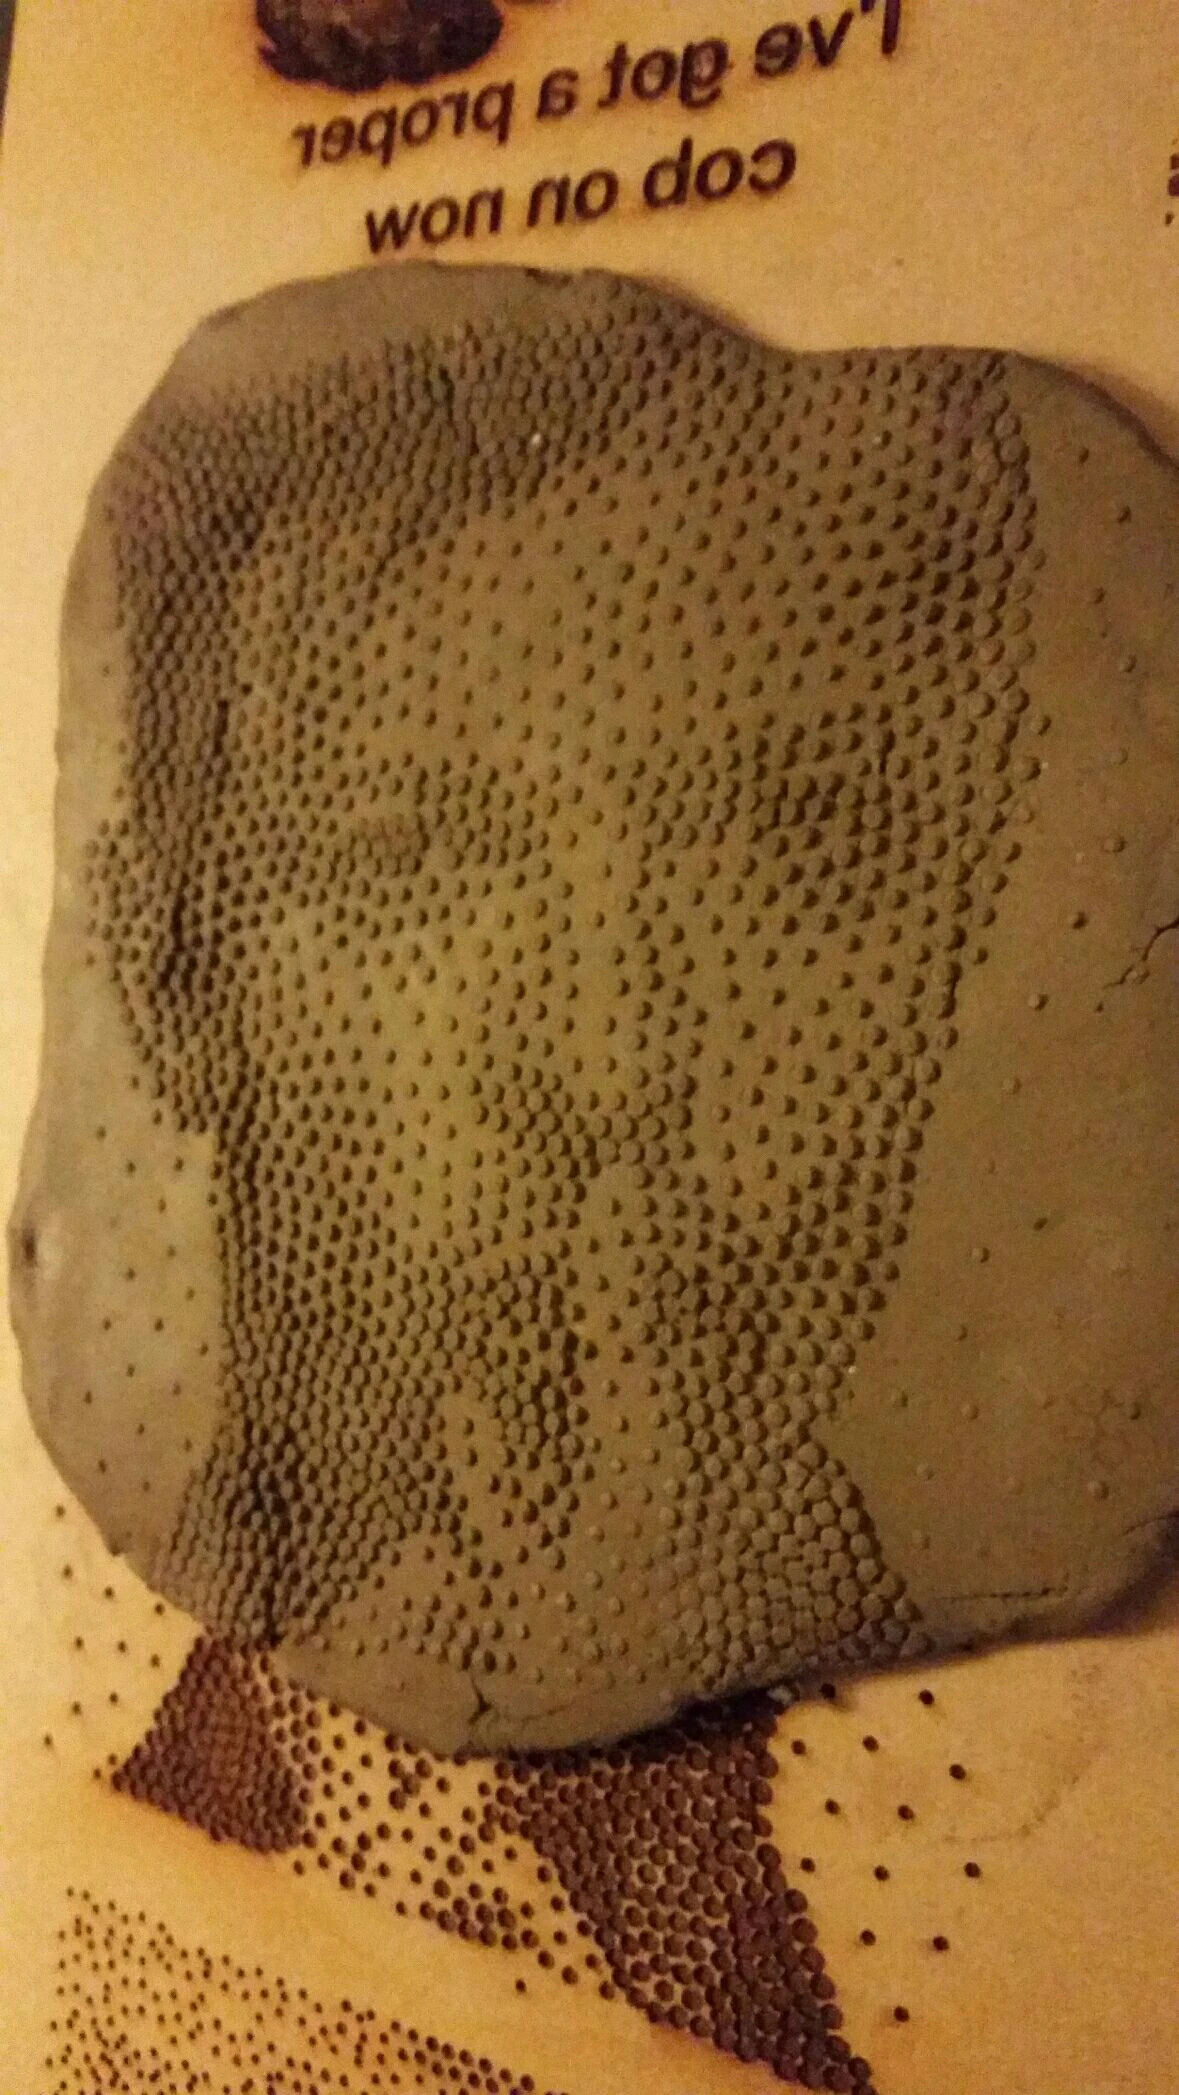 Dots-hidden portraits in clay